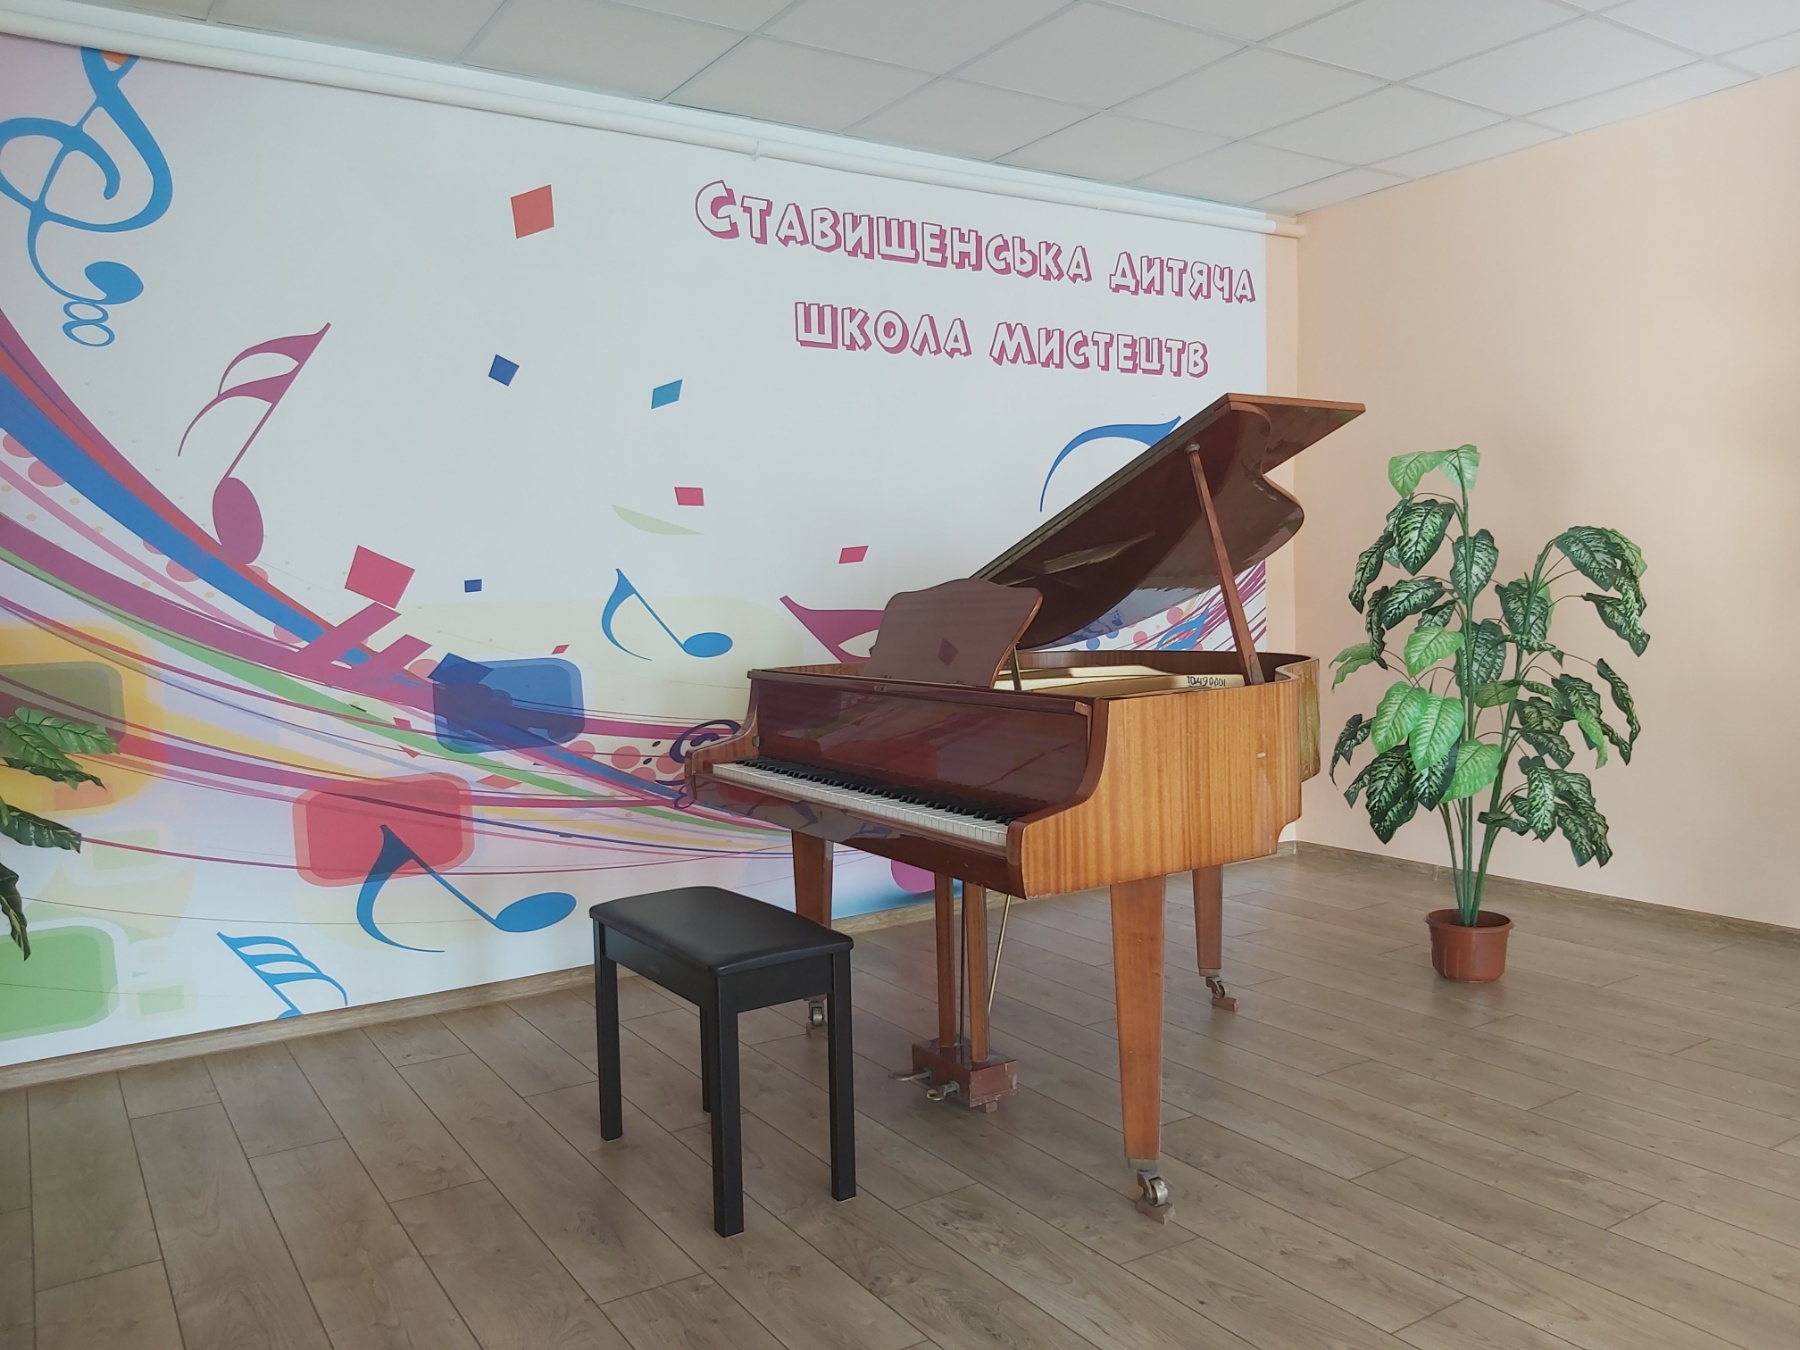 Ставищенская община завершила ремонт своей школы искусств